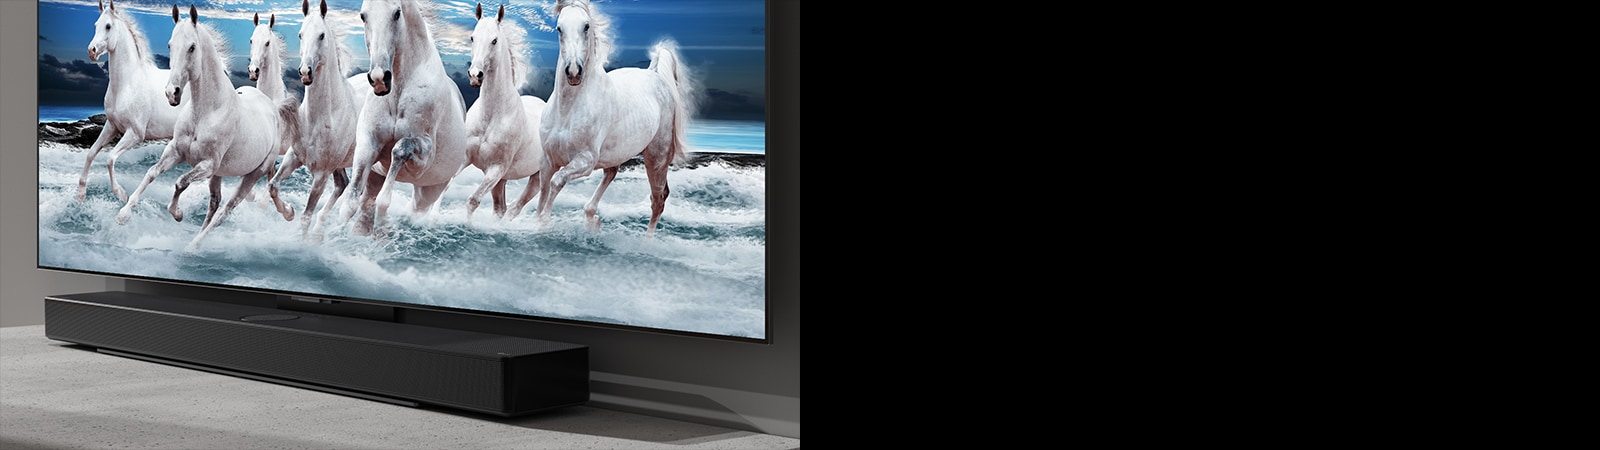 Саундбар и телевизор са поставени на бяла маса и 7 бели коня са показани на телевизора.